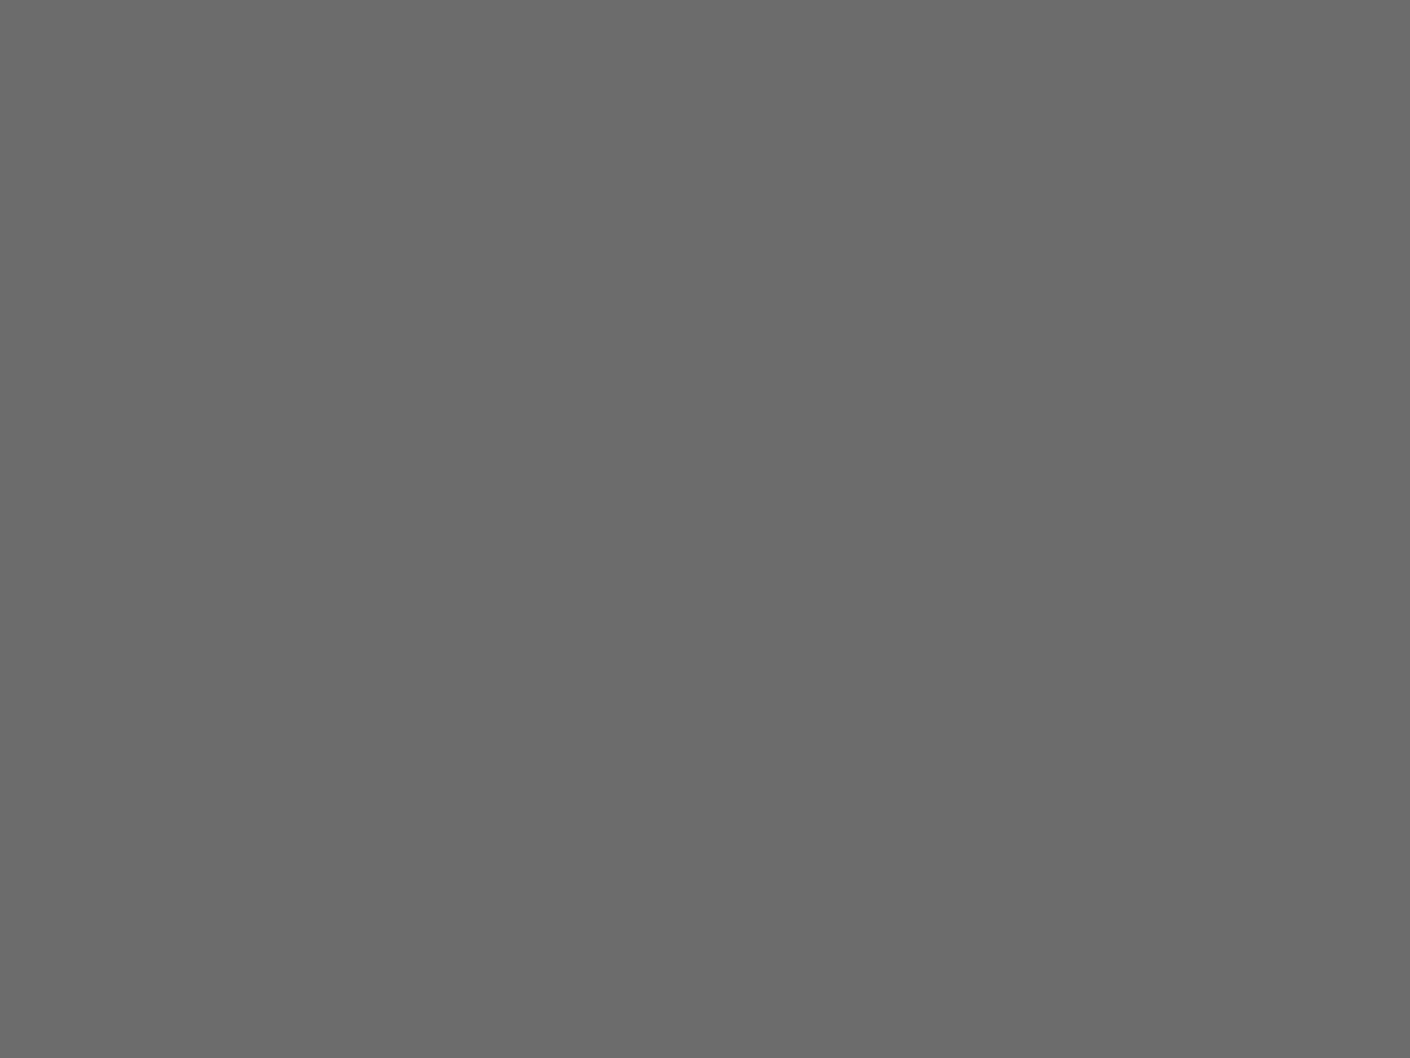 Распаковка картины Александра Иванова «Явление Христа народу». 1944 год. Фотография: Государственная Третьяковская галерея, Москва